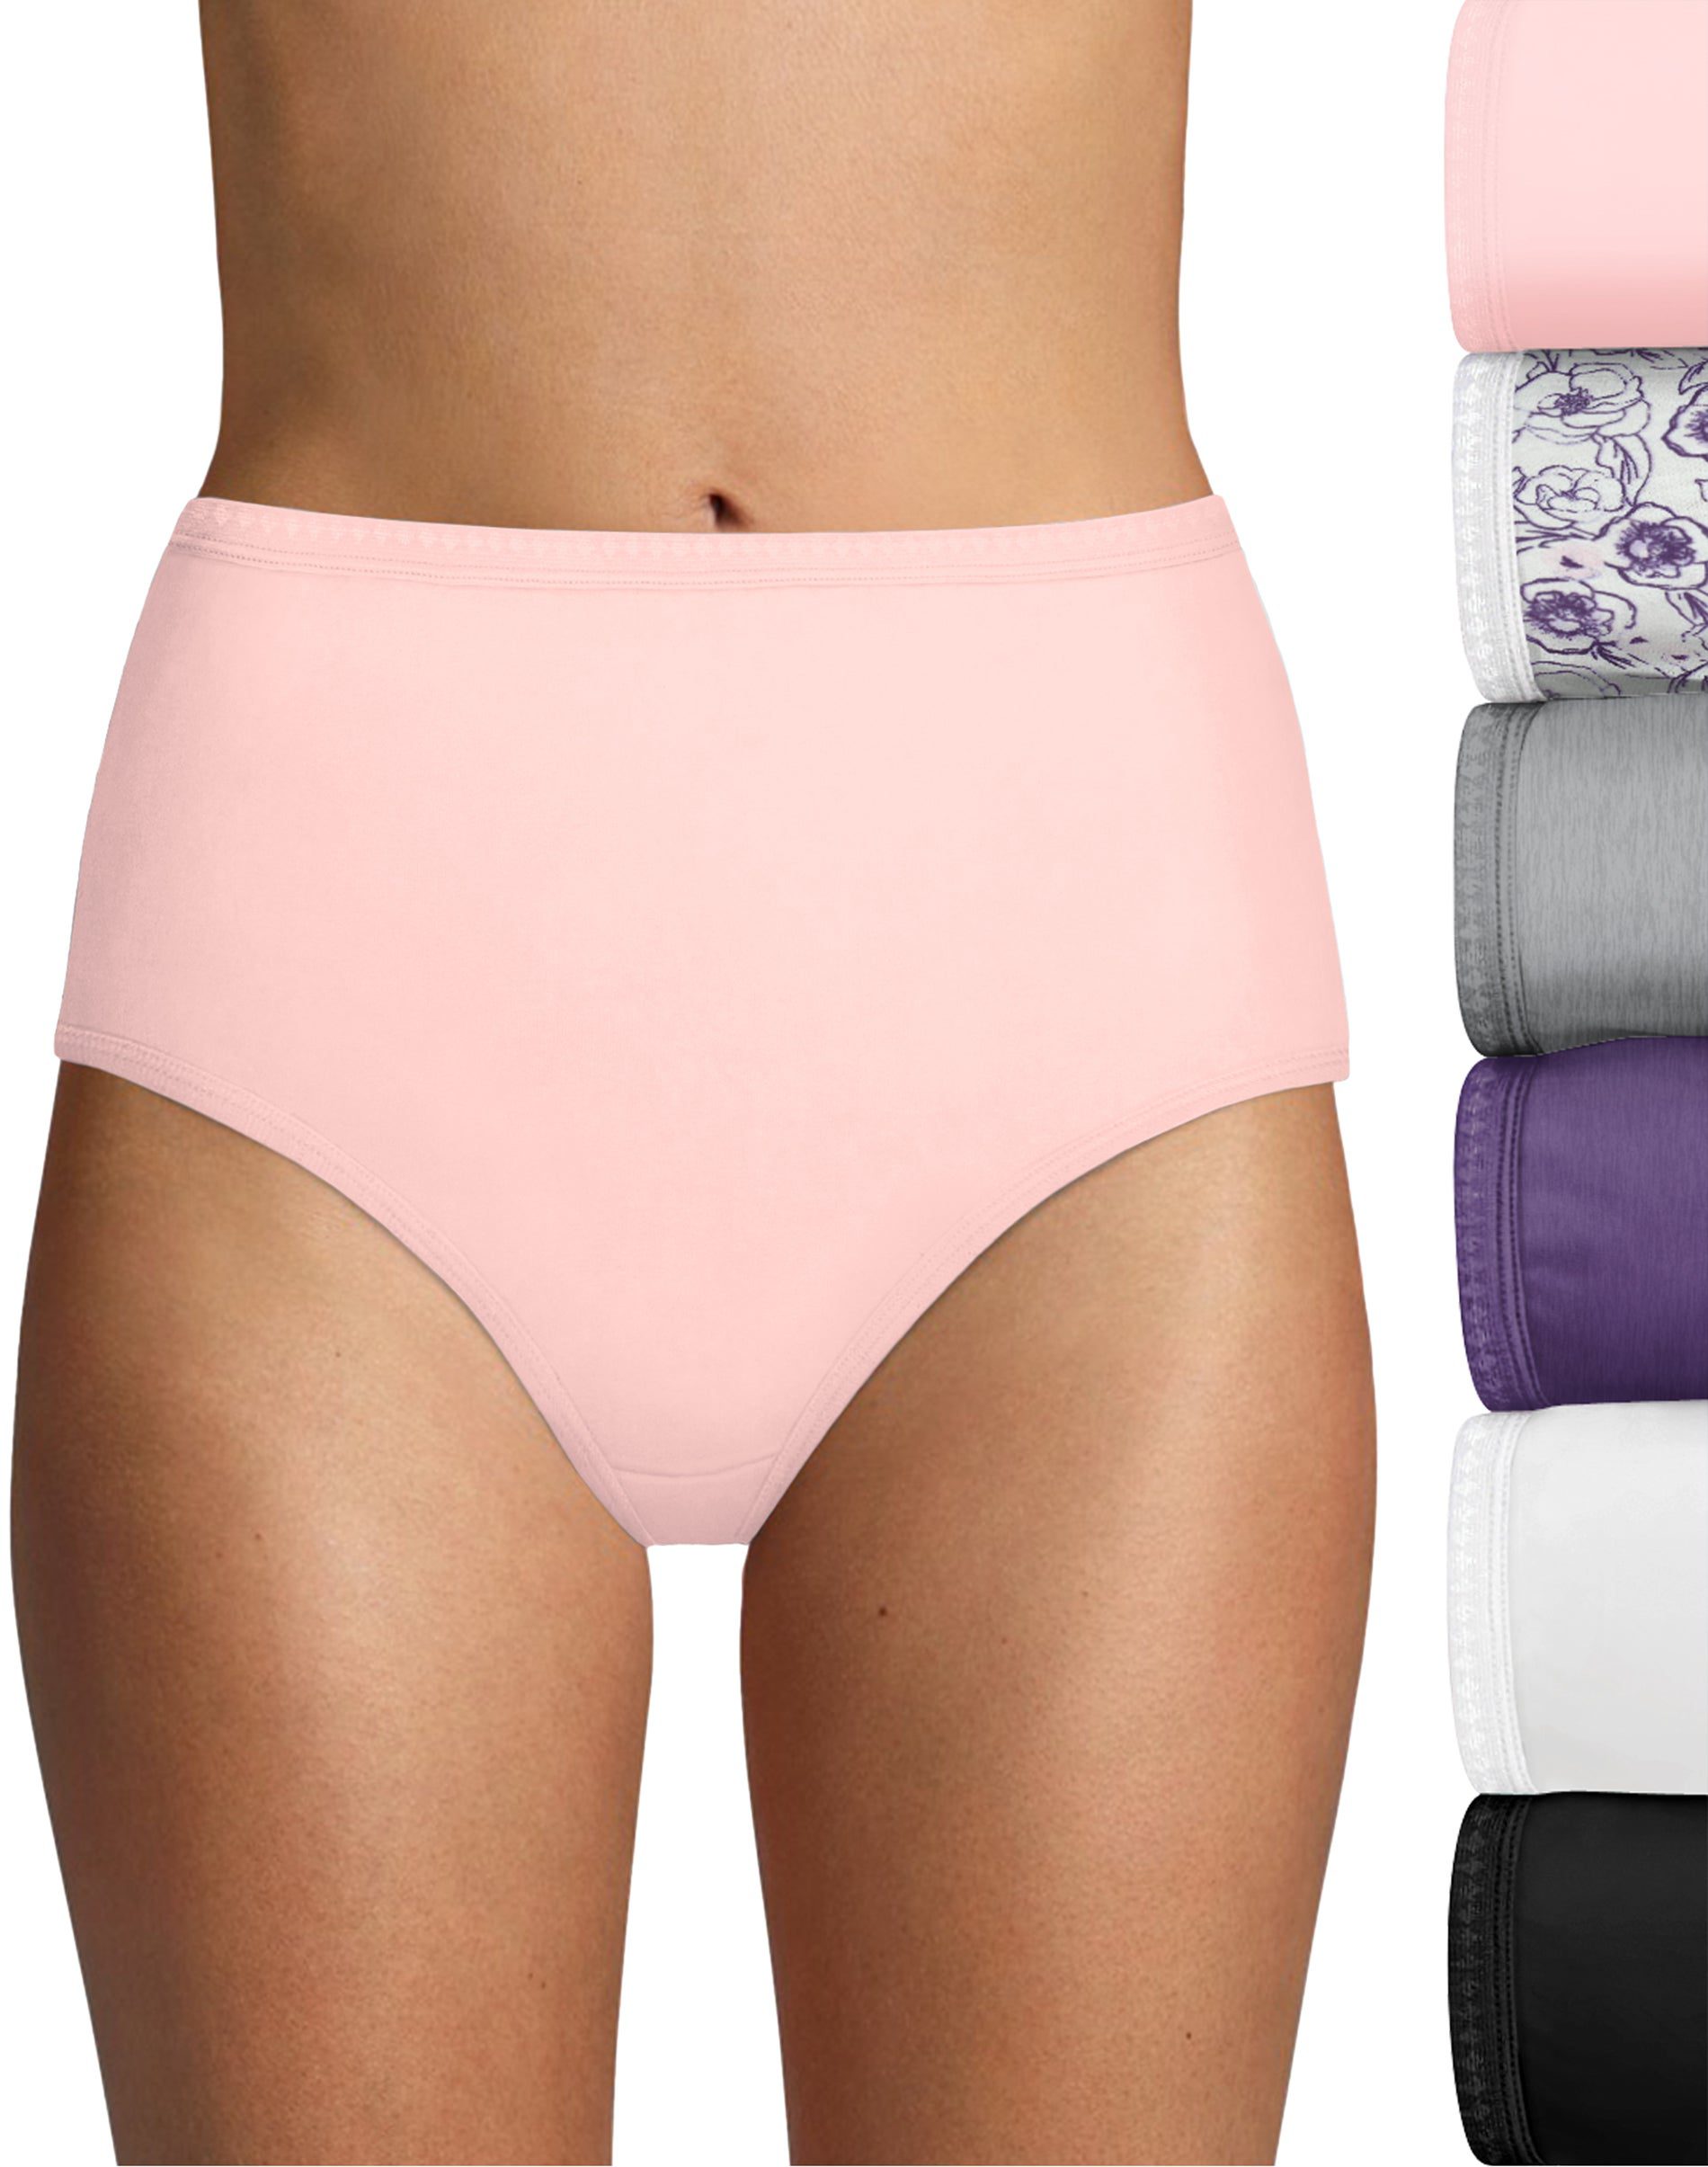 Hanes Womens High-Waisted Briefs Panties Pack, Lightweight